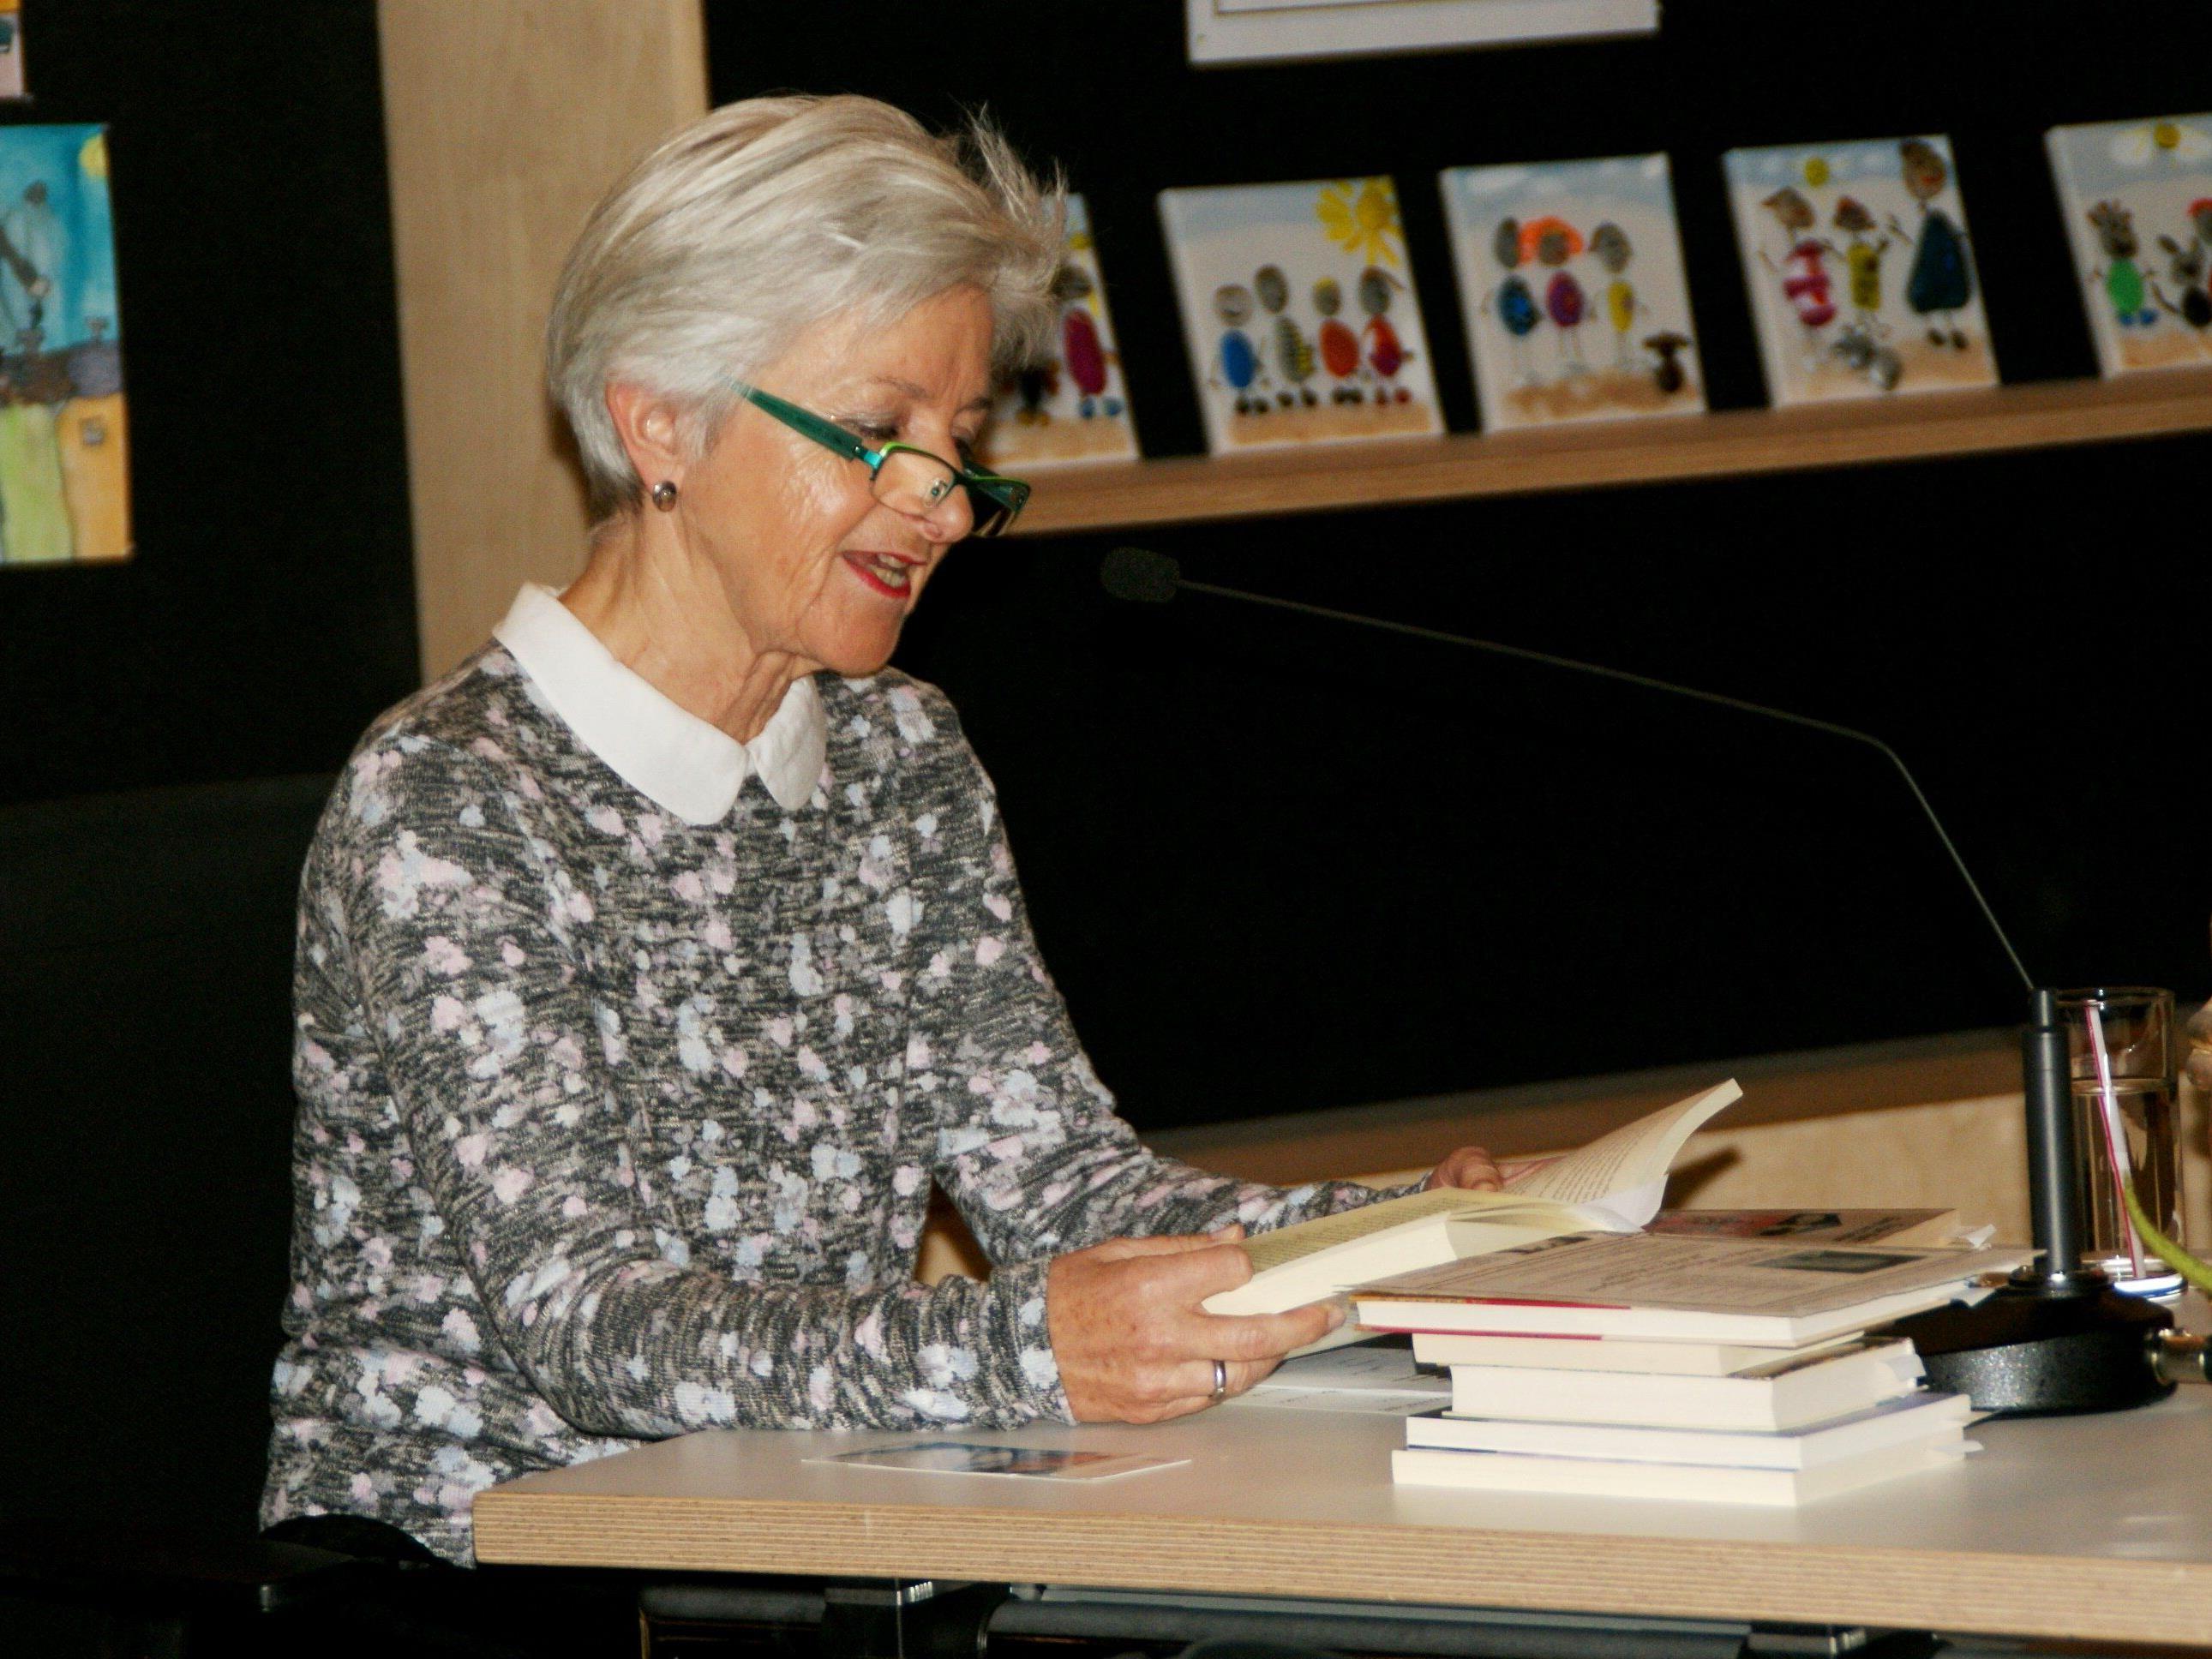 Bernarda Gisinger las Geschichten zum Lächeln und Weinen